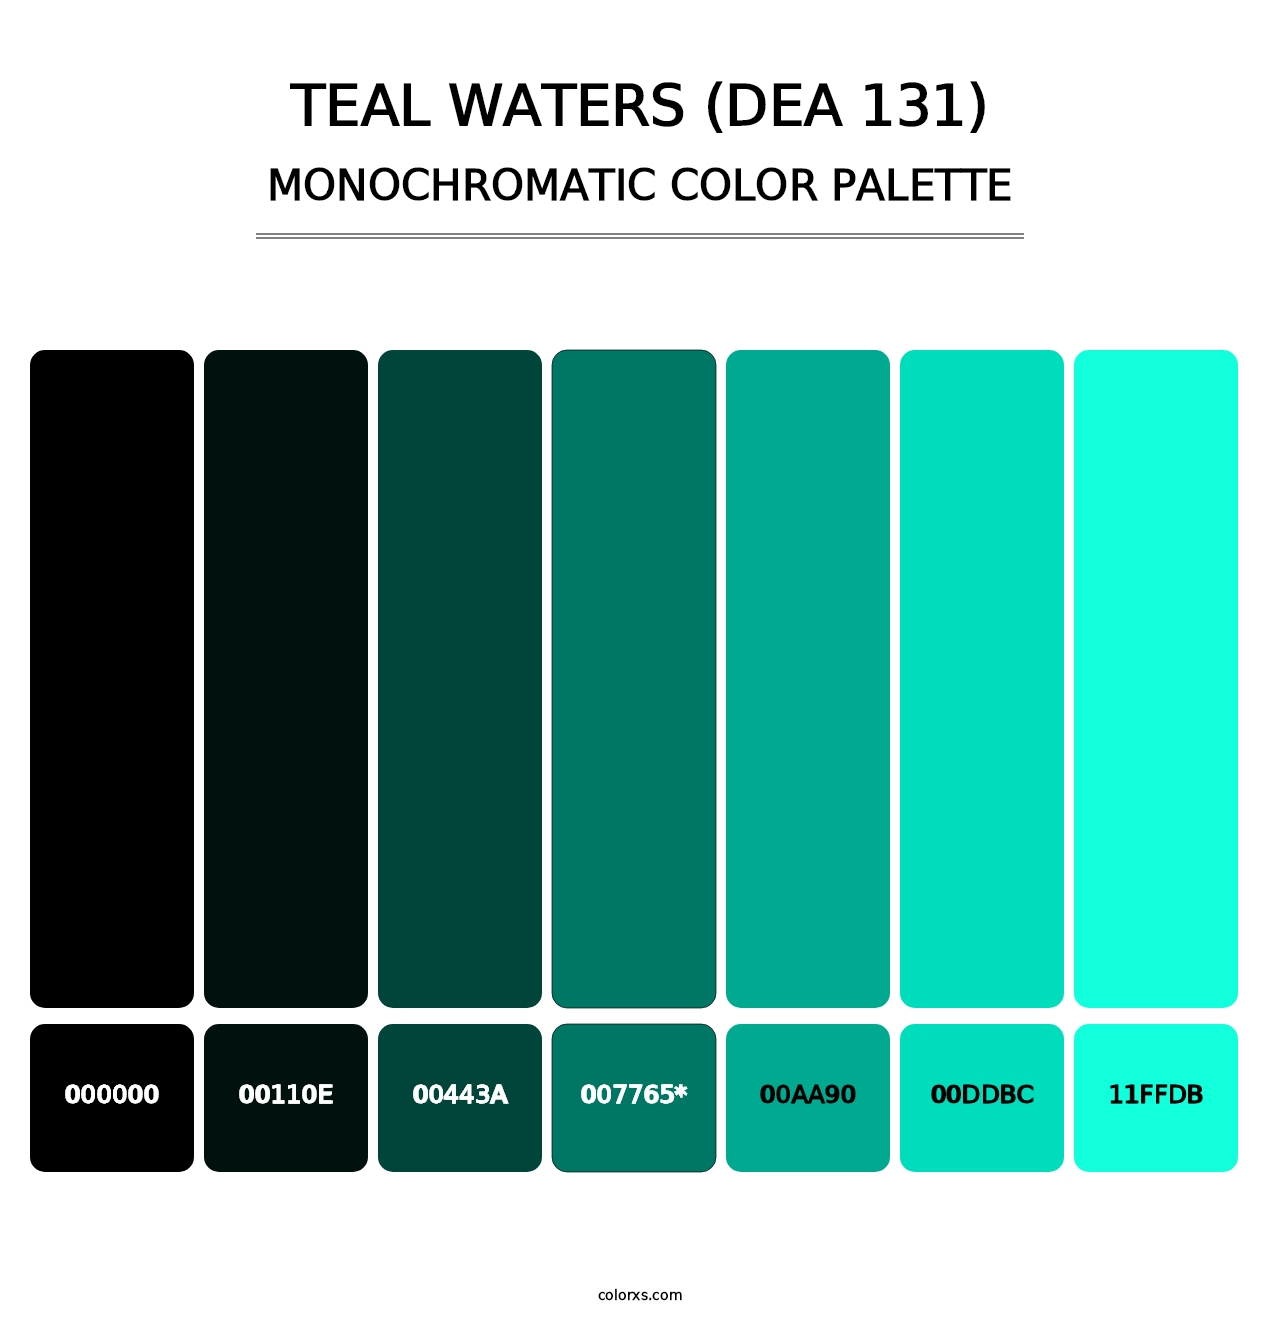 Teal Waters (DEA 131) - Monochromatic Color Palette